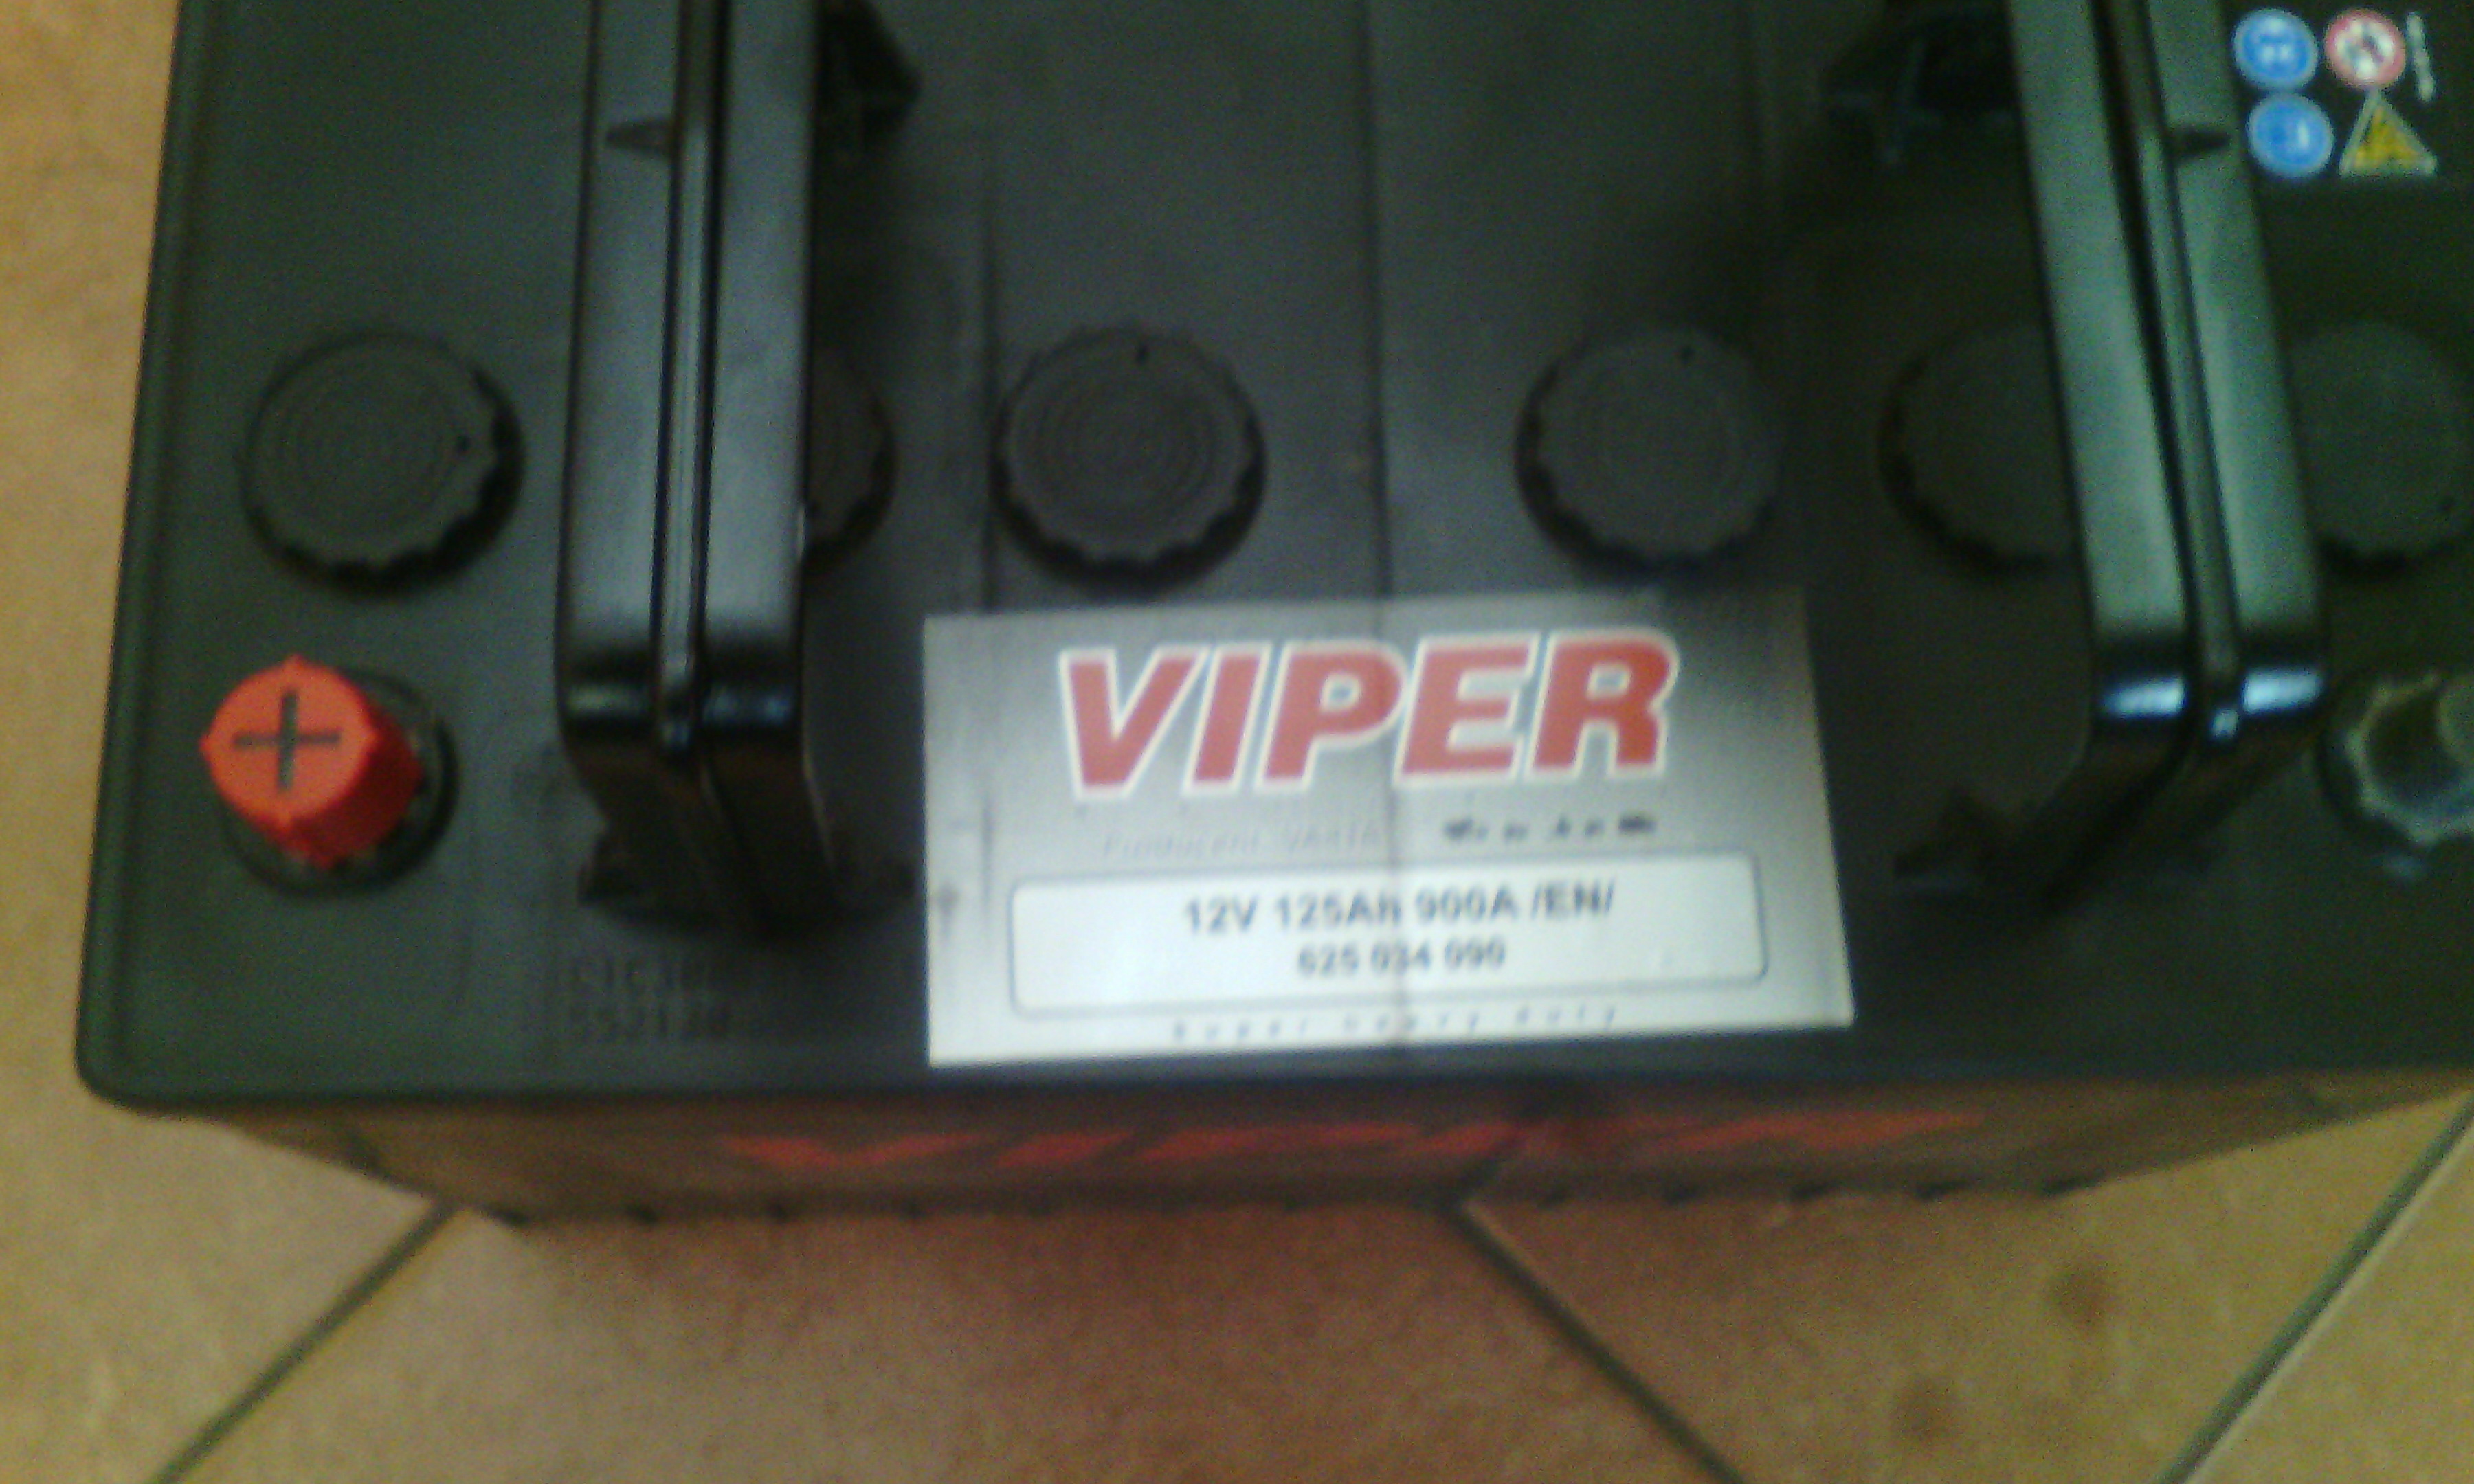 Akumulator Viper 12V 125Ah 900A L+